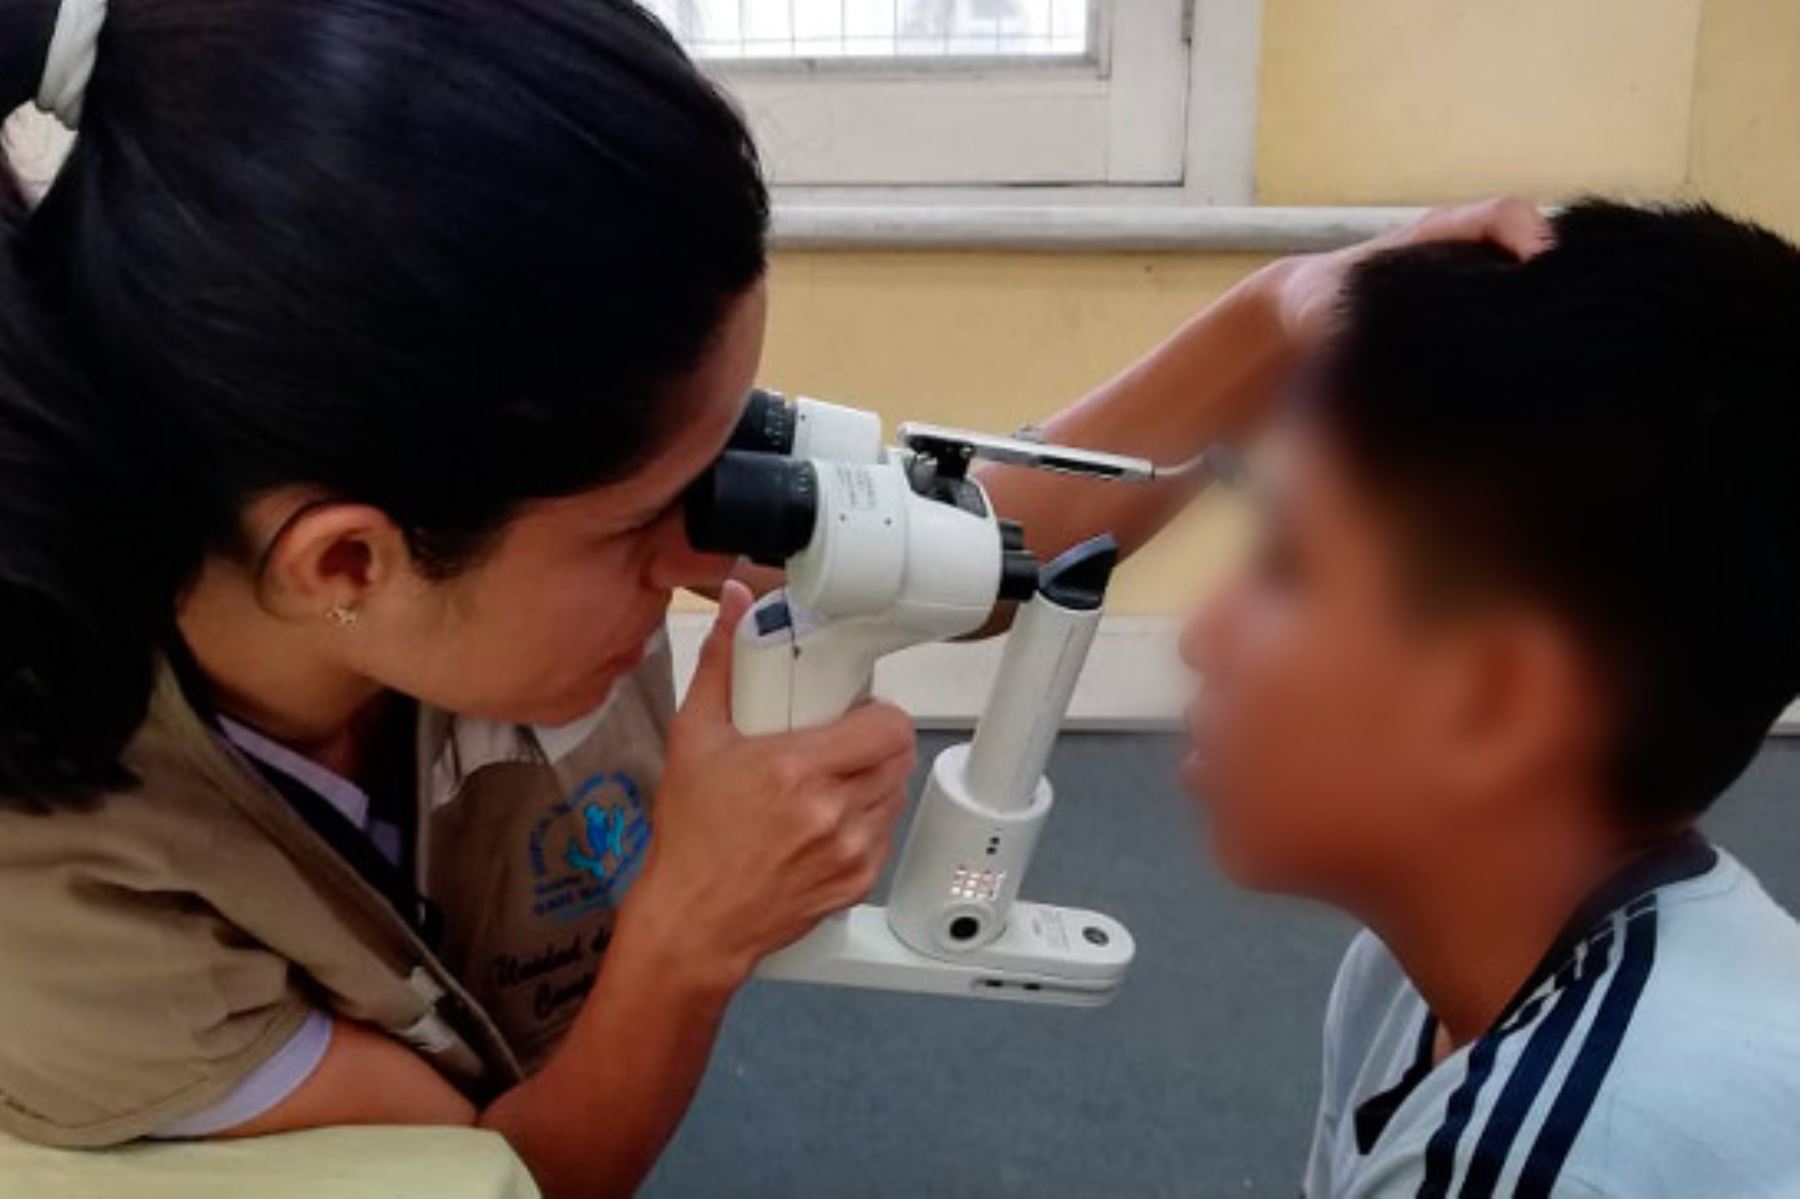 El Ministerio de Salud recomienda acudir al servicio médico oftalmológico con regularidad para prevenir o tratar problemas visuales.